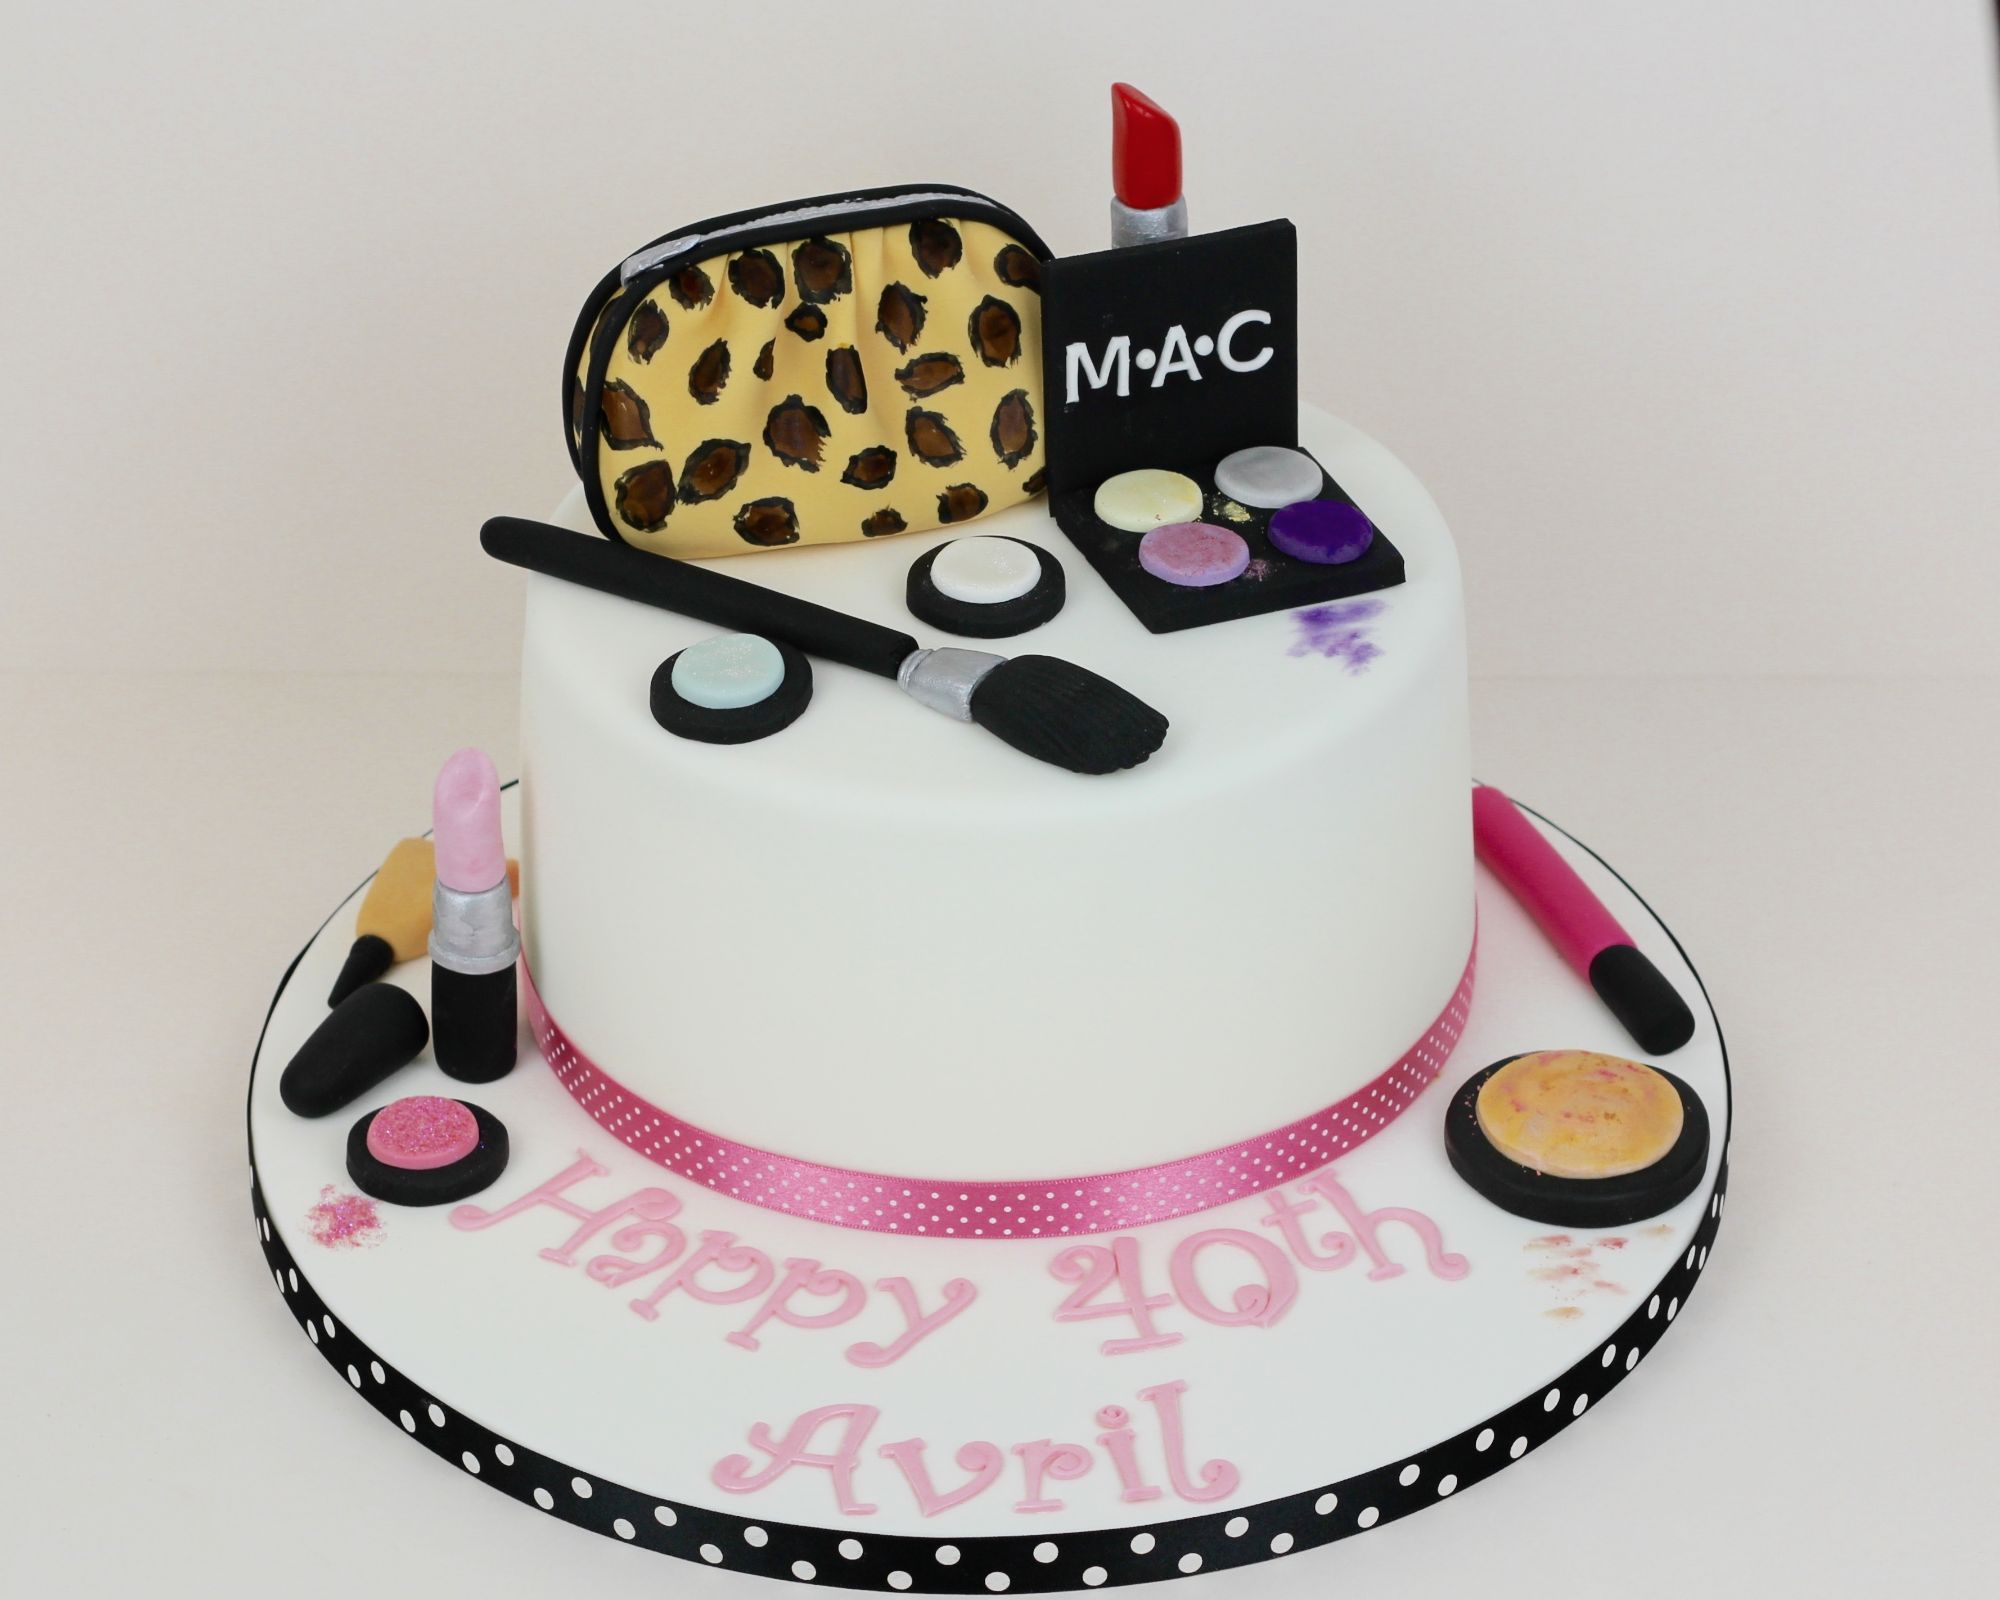 Mac makeup cake